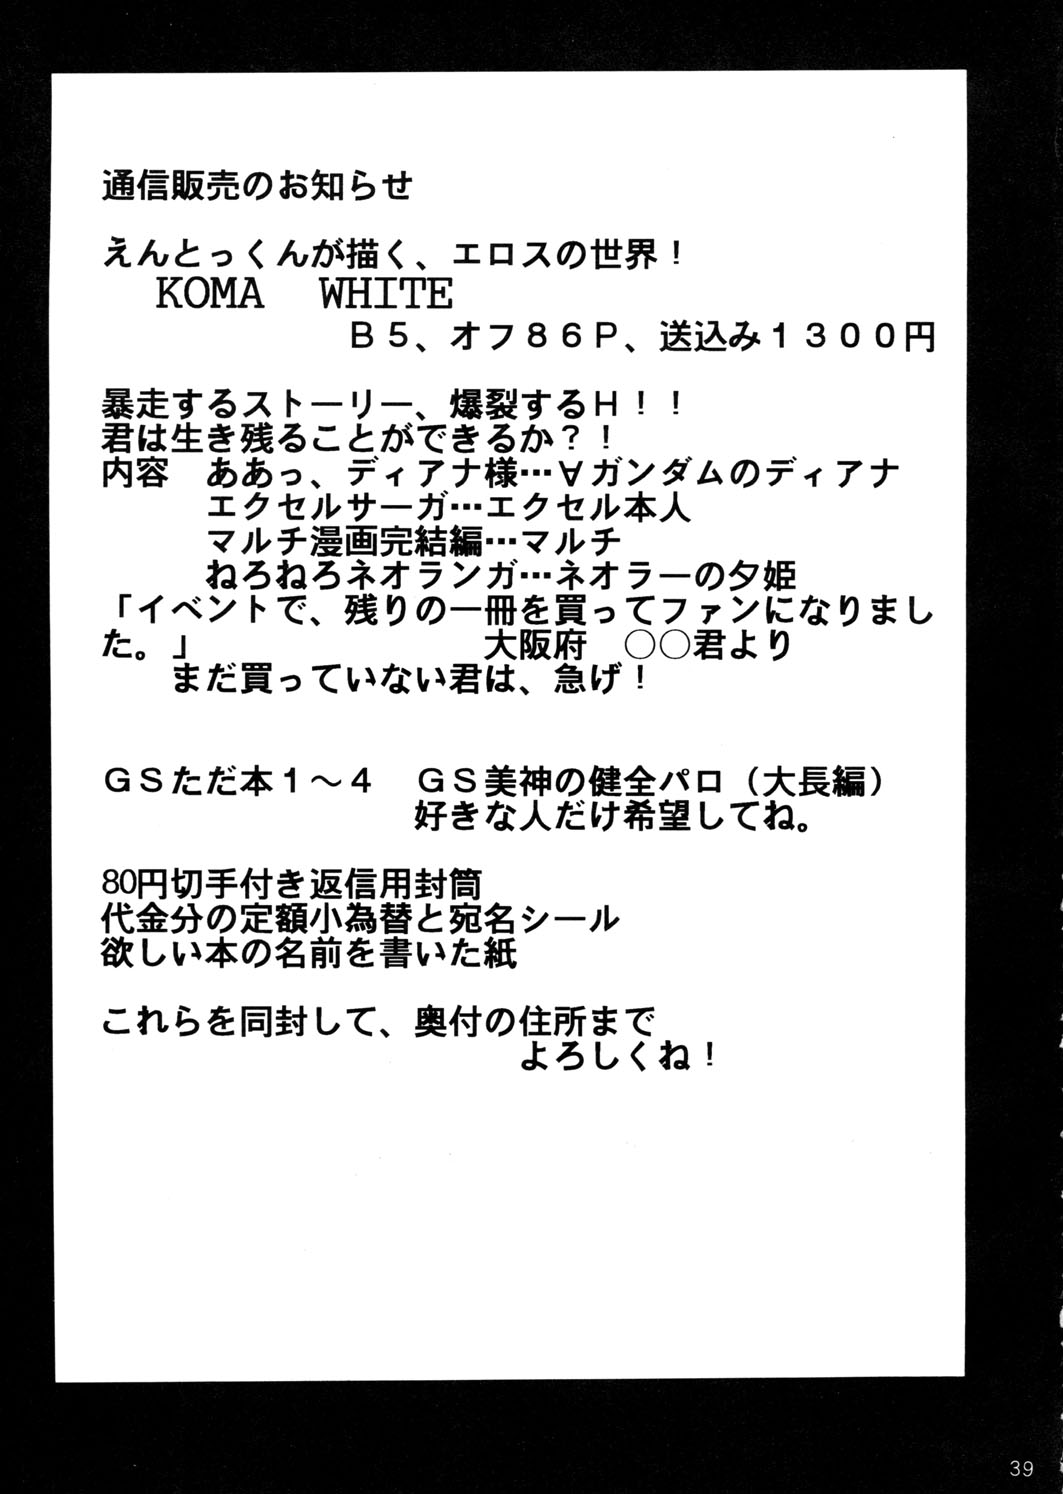 [スタジオKIMIGABUCHI (えんとっくん)] すぺしゃる KIMIGABUCHI 2000年 SUMMER PROTOTYPE (ラブひな、ケロロ軍曹)